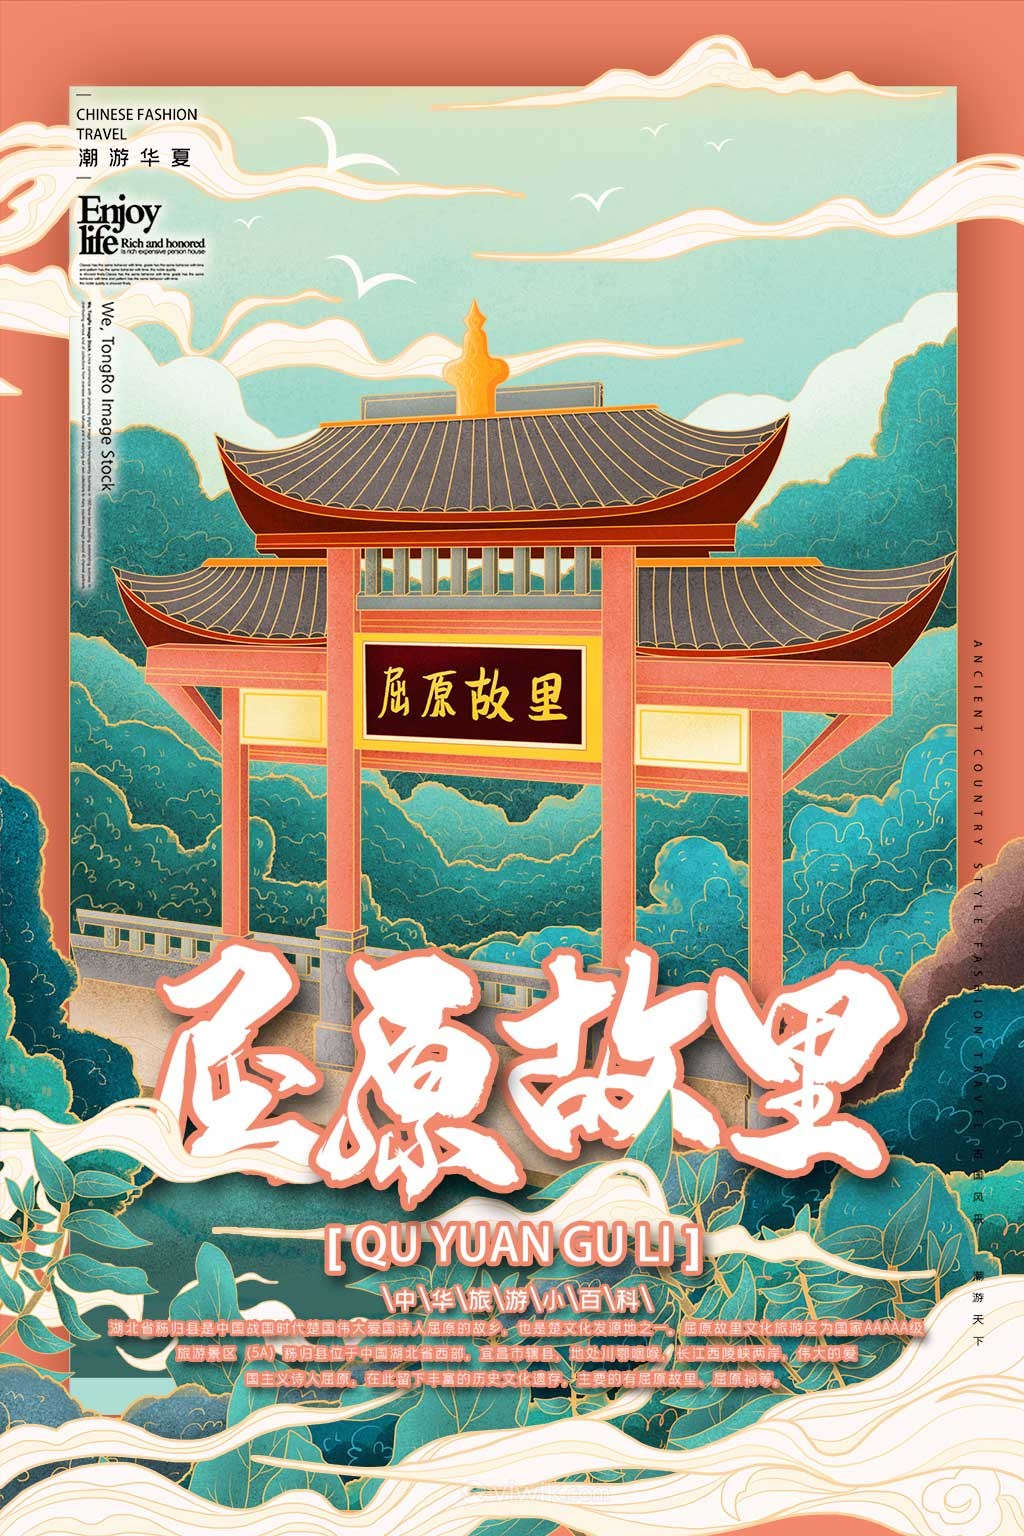 中国城市潮旅游屈原故里手绘海报素材